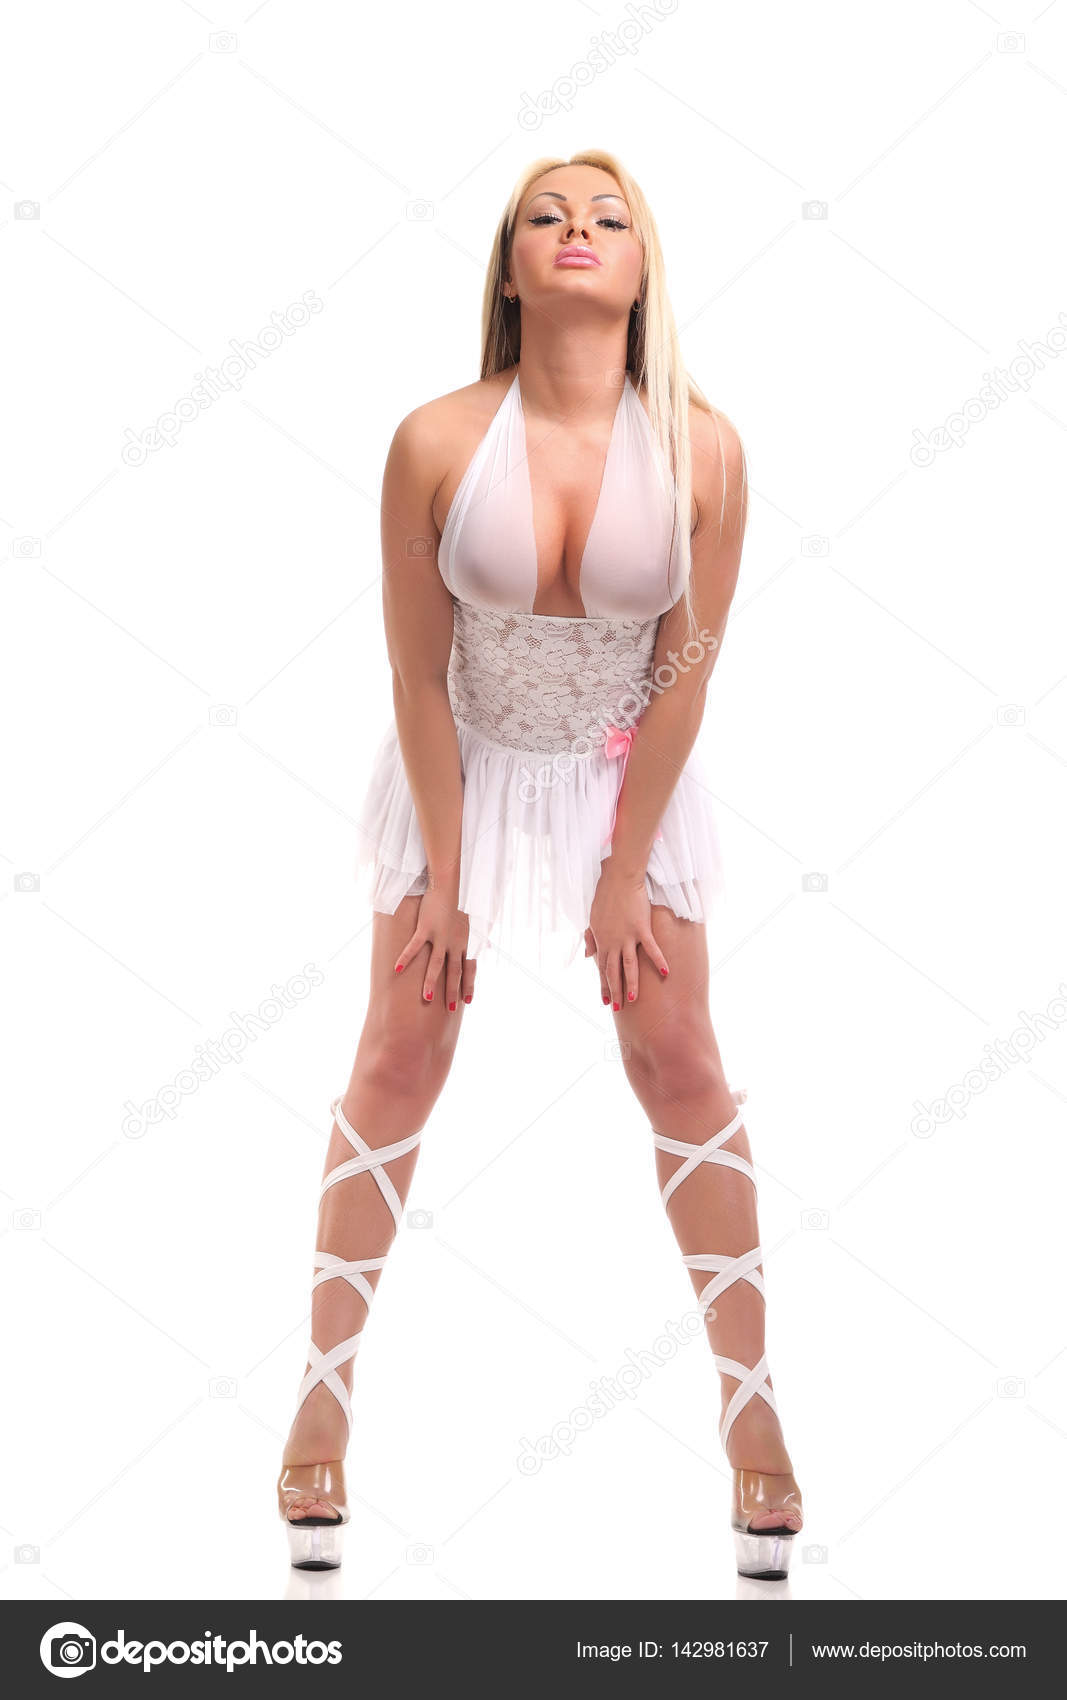 https://st3.depositphotos.com/2970081/14298/i/1600/depositphotos_142981637-stock-photo-stripper-girl-in-a-white.jpg